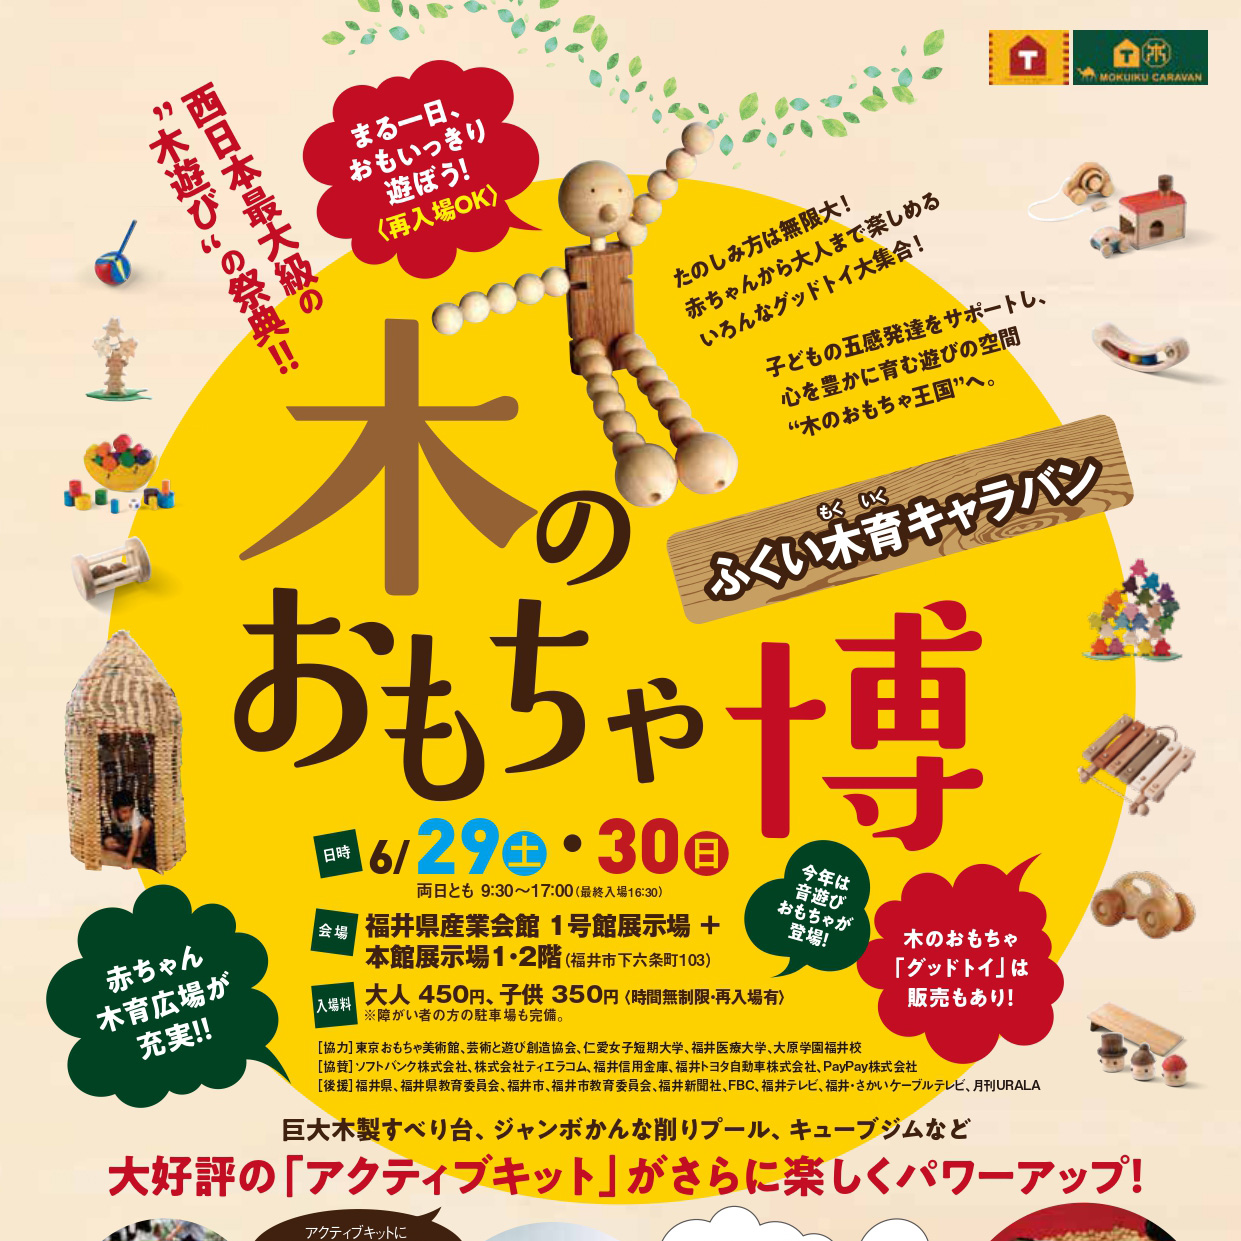 西日本最大級の木遊び体験イベント「木のおもちゃ博」のポスター。